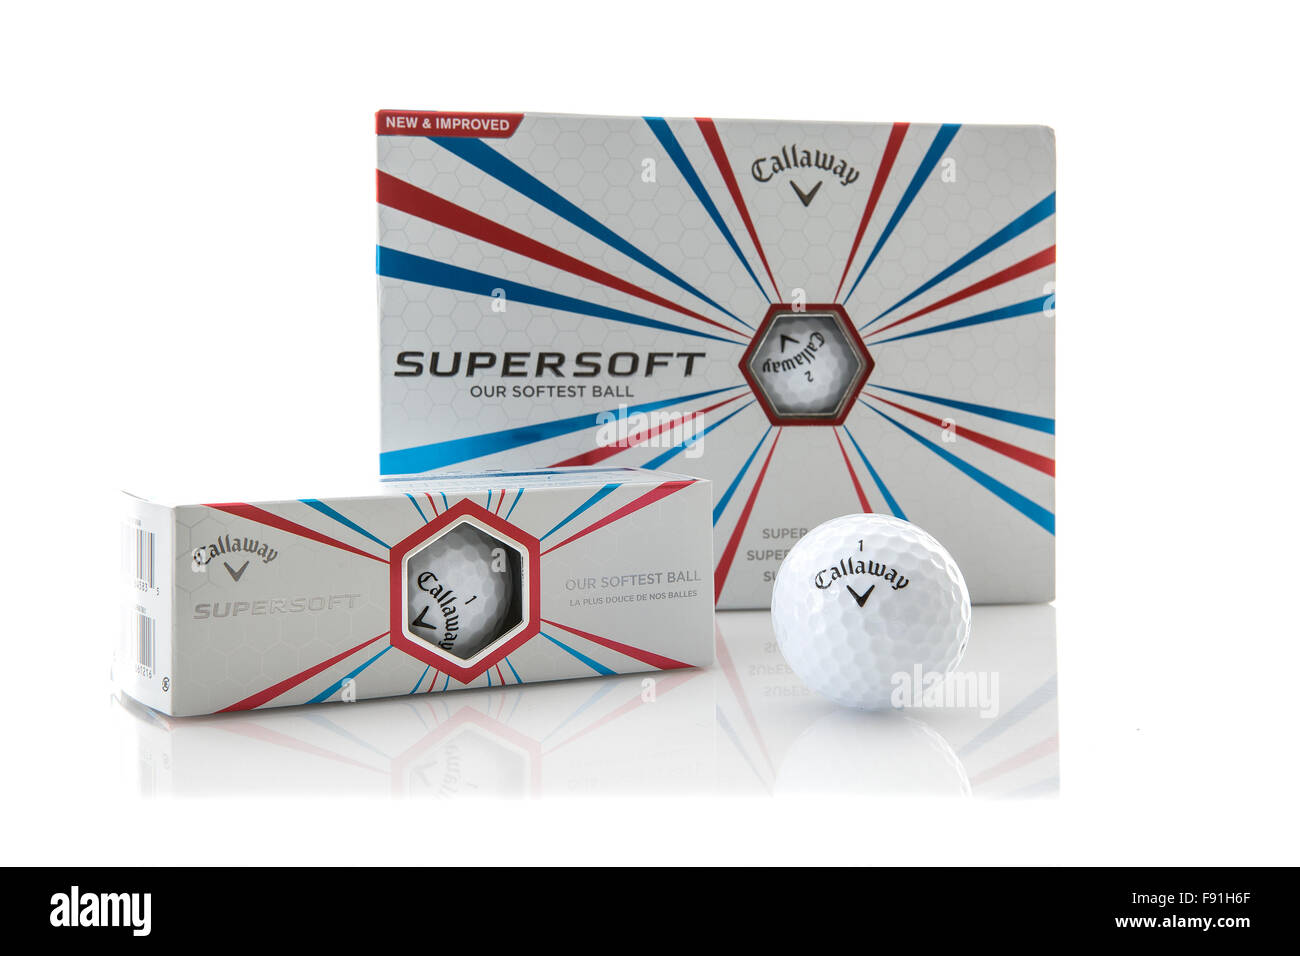 La boîte de balles de golf Callaway Supersoft sur fond blanc Banque D'Images